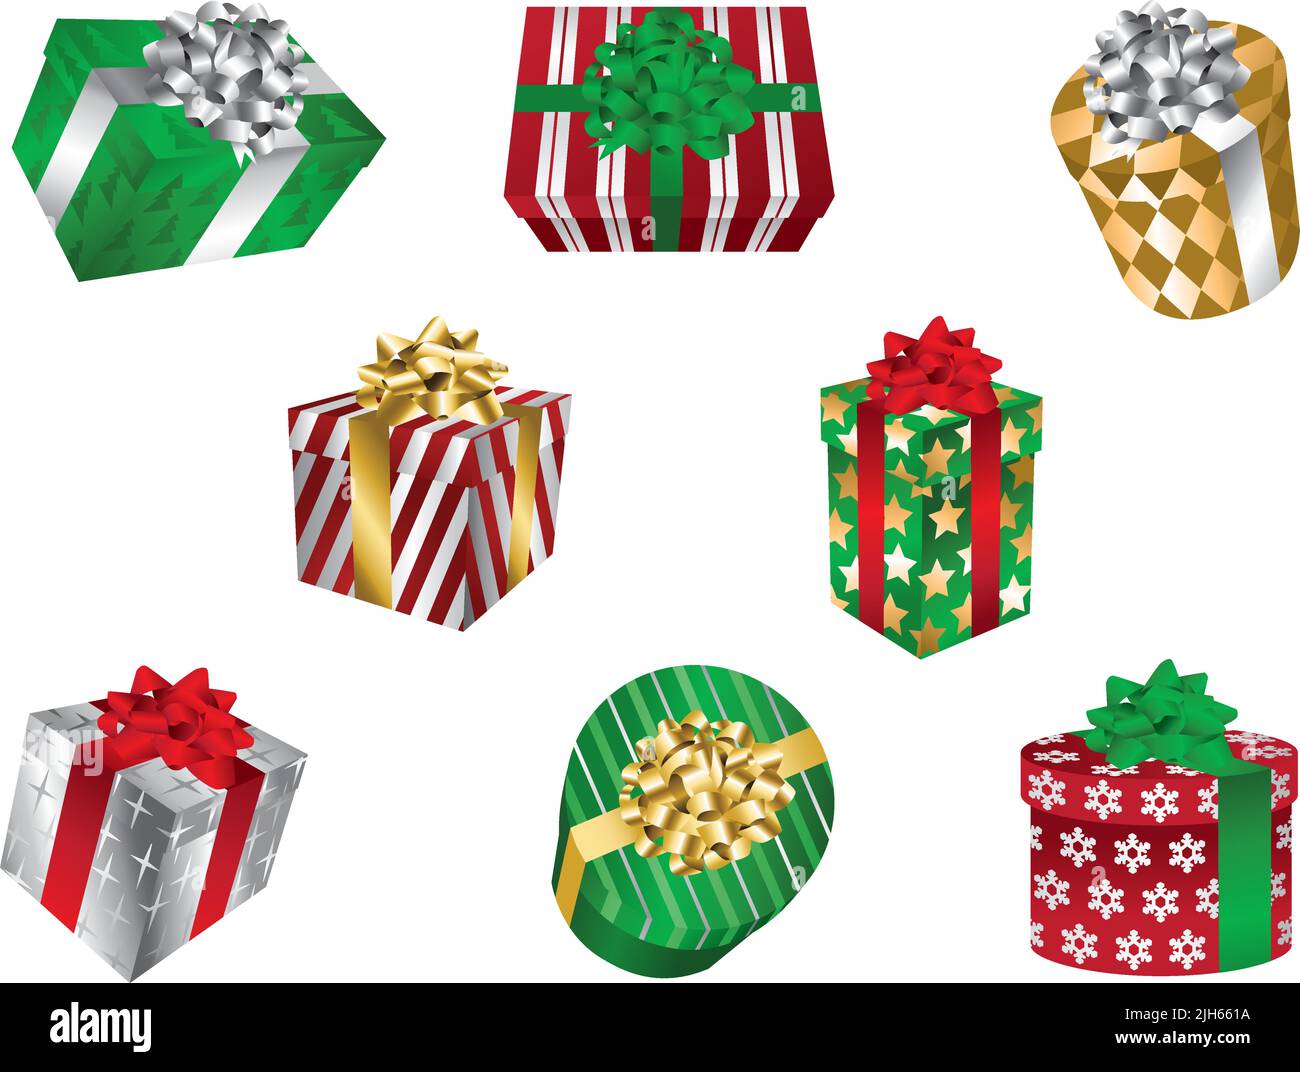 Eine Reihe von Vektor-Illustrationen von Weihnachten gemusterten Geschenkboxen mit Schleifen und Bändern. Stock Vektor